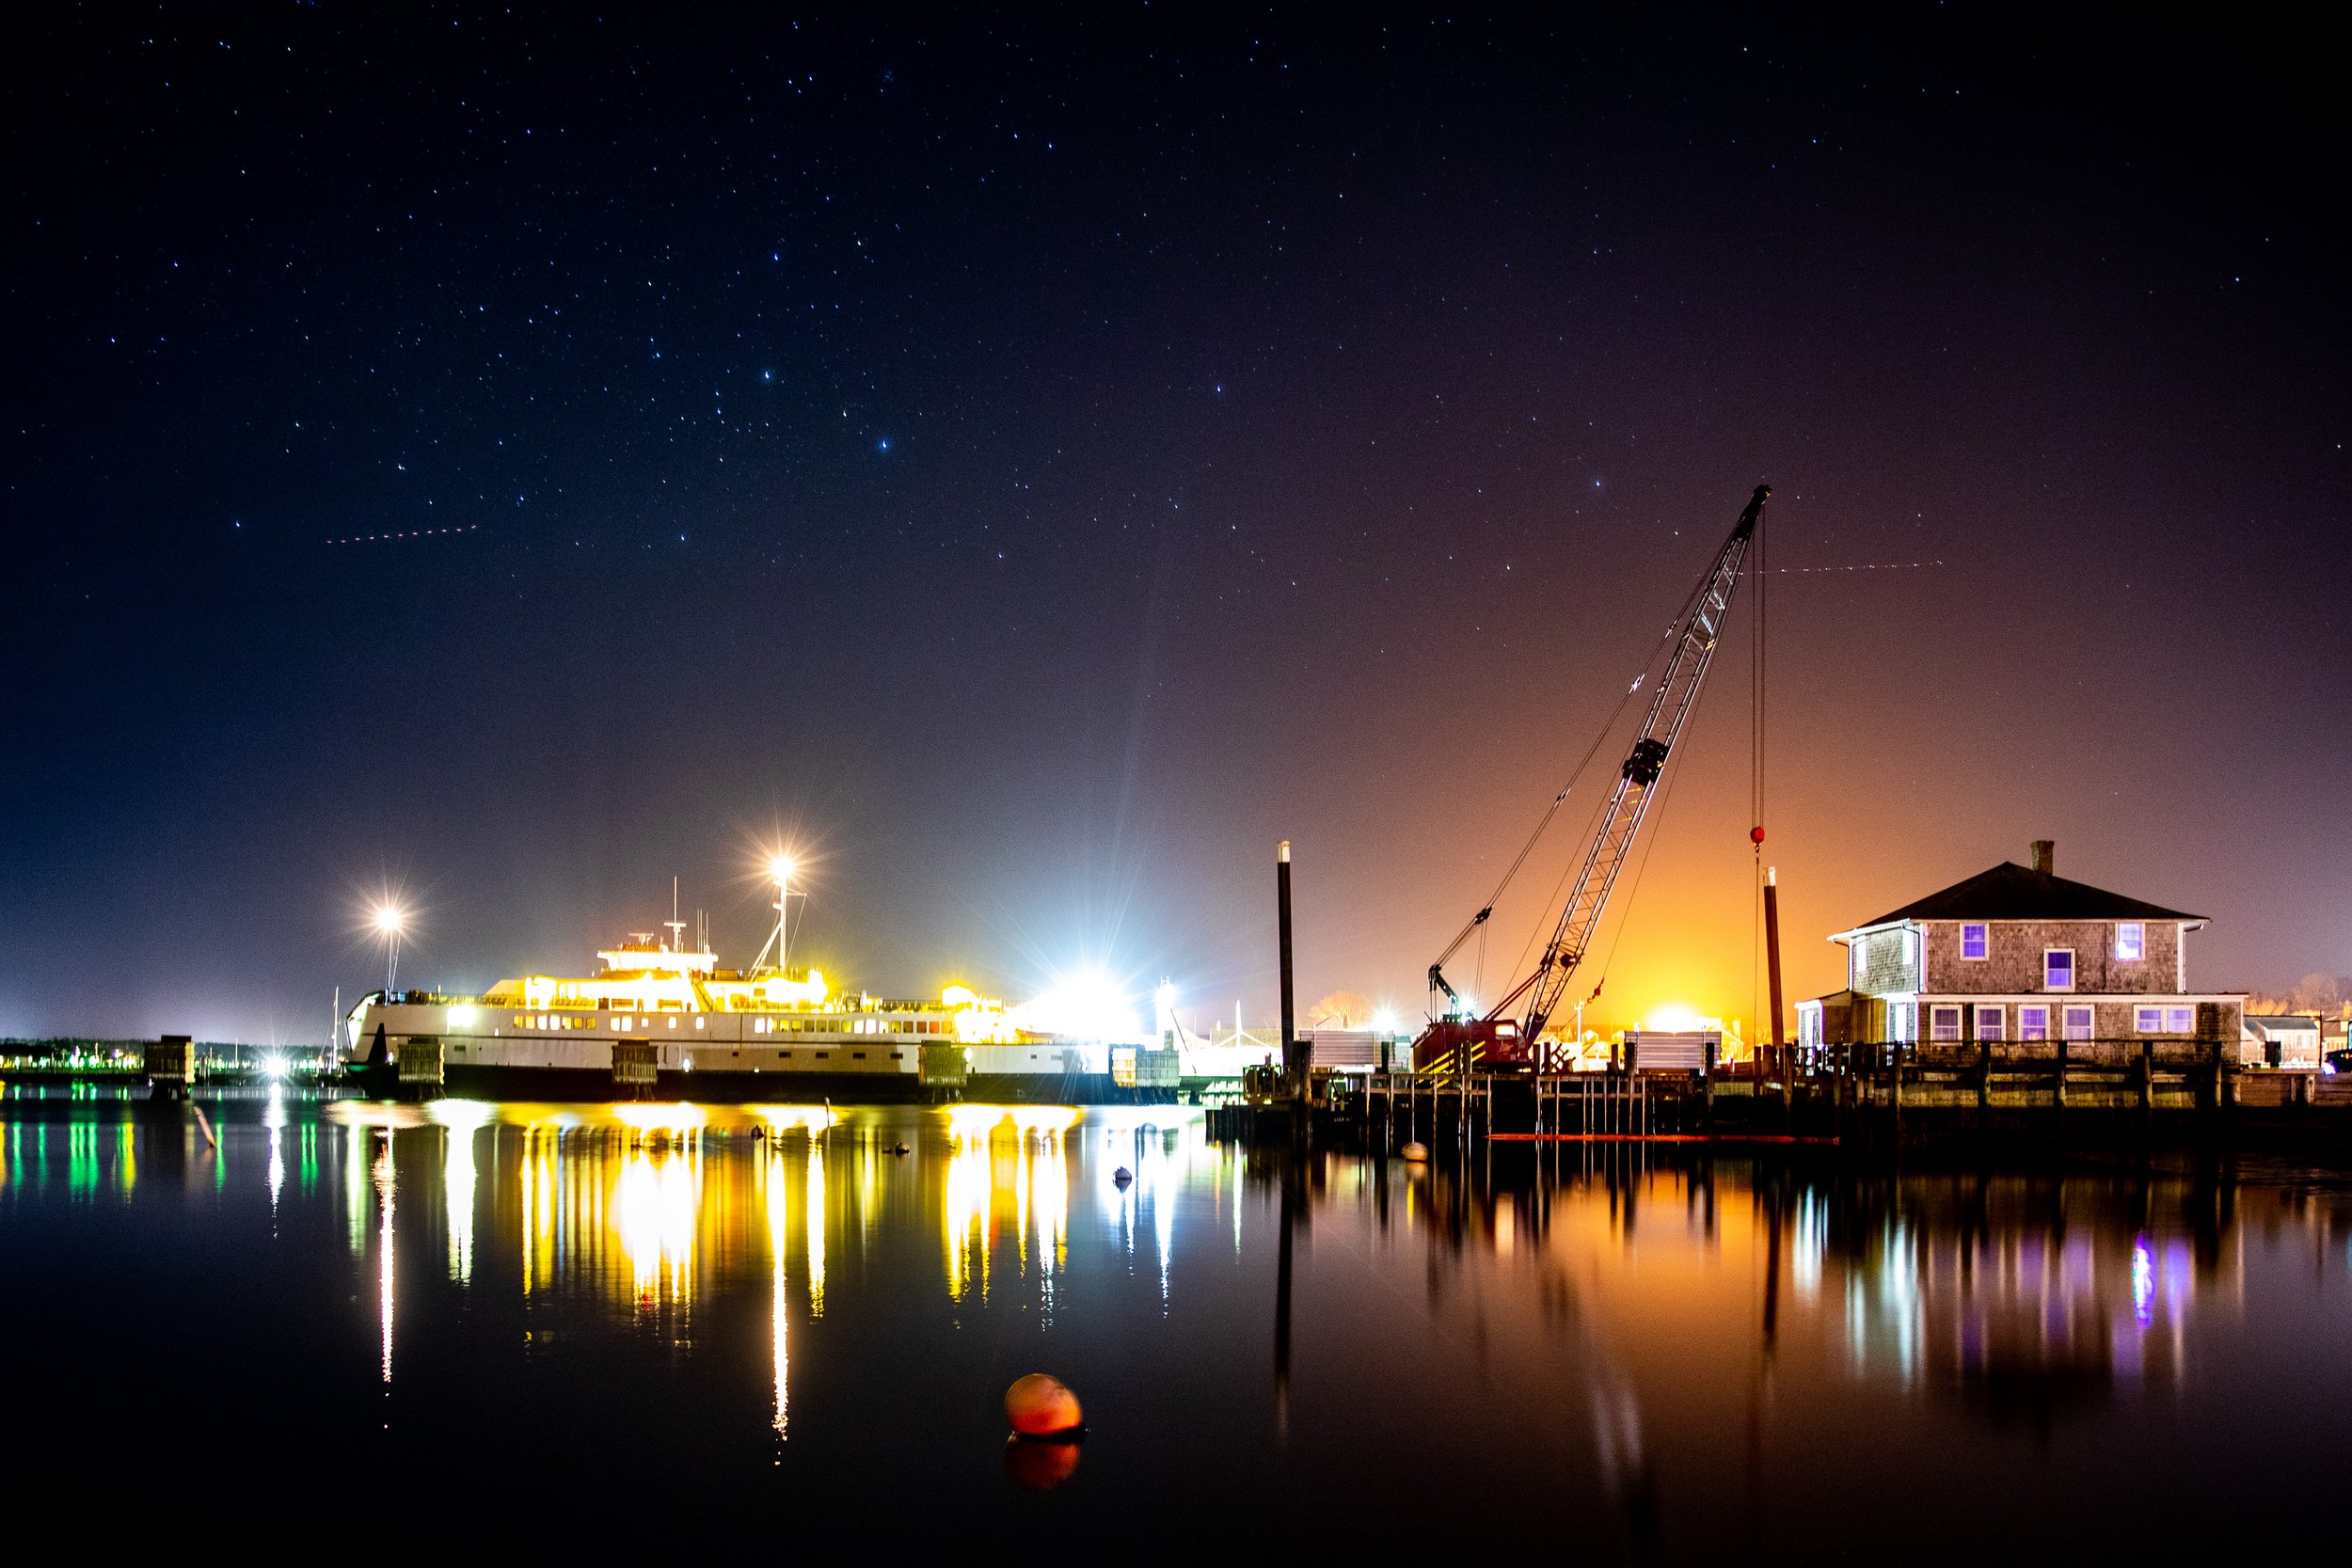 Nantucket Harbor at night